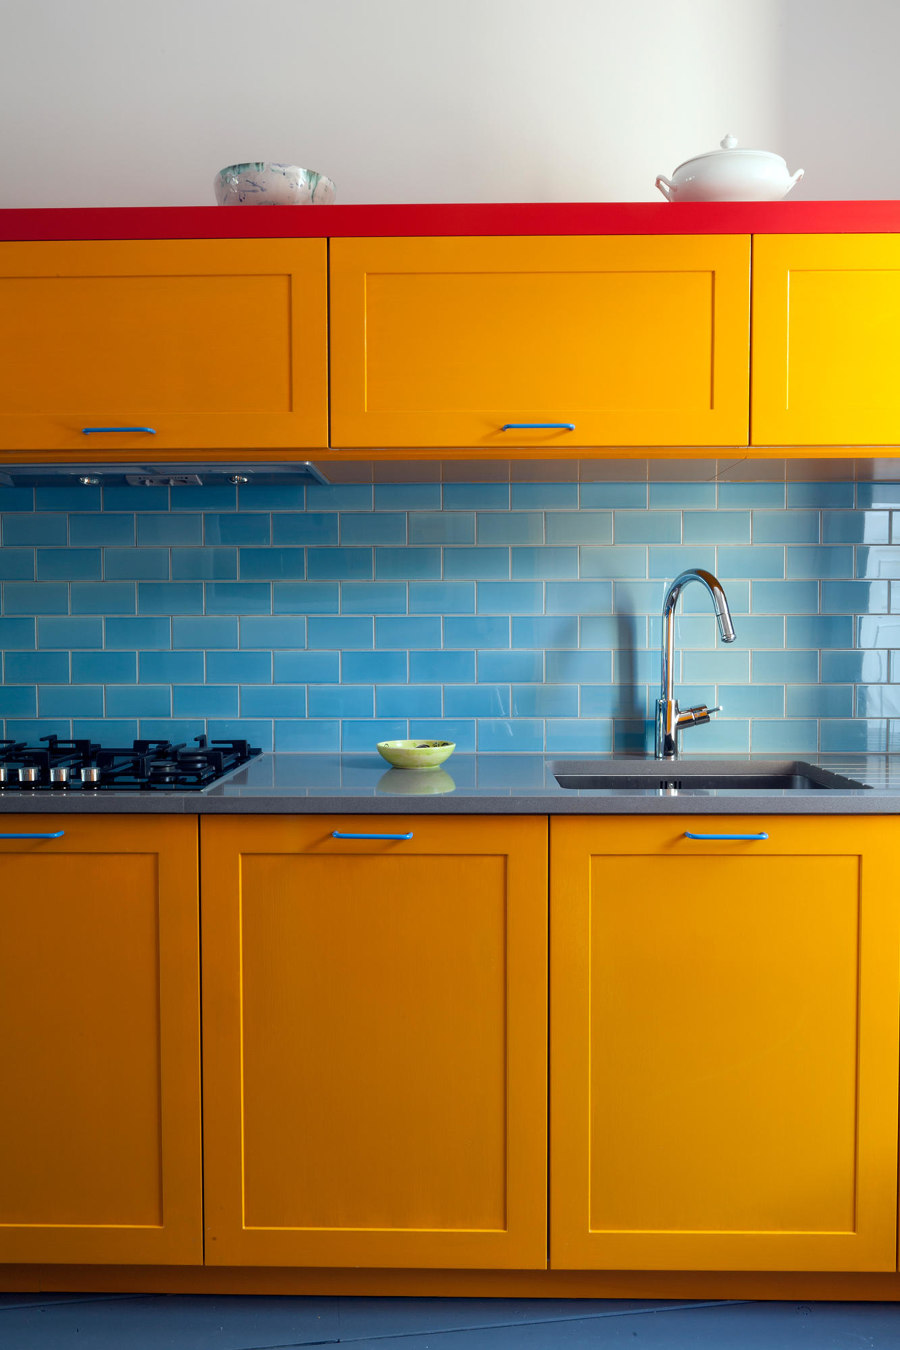 Eight creative material options for a kitchen backsplash | Nouveautés